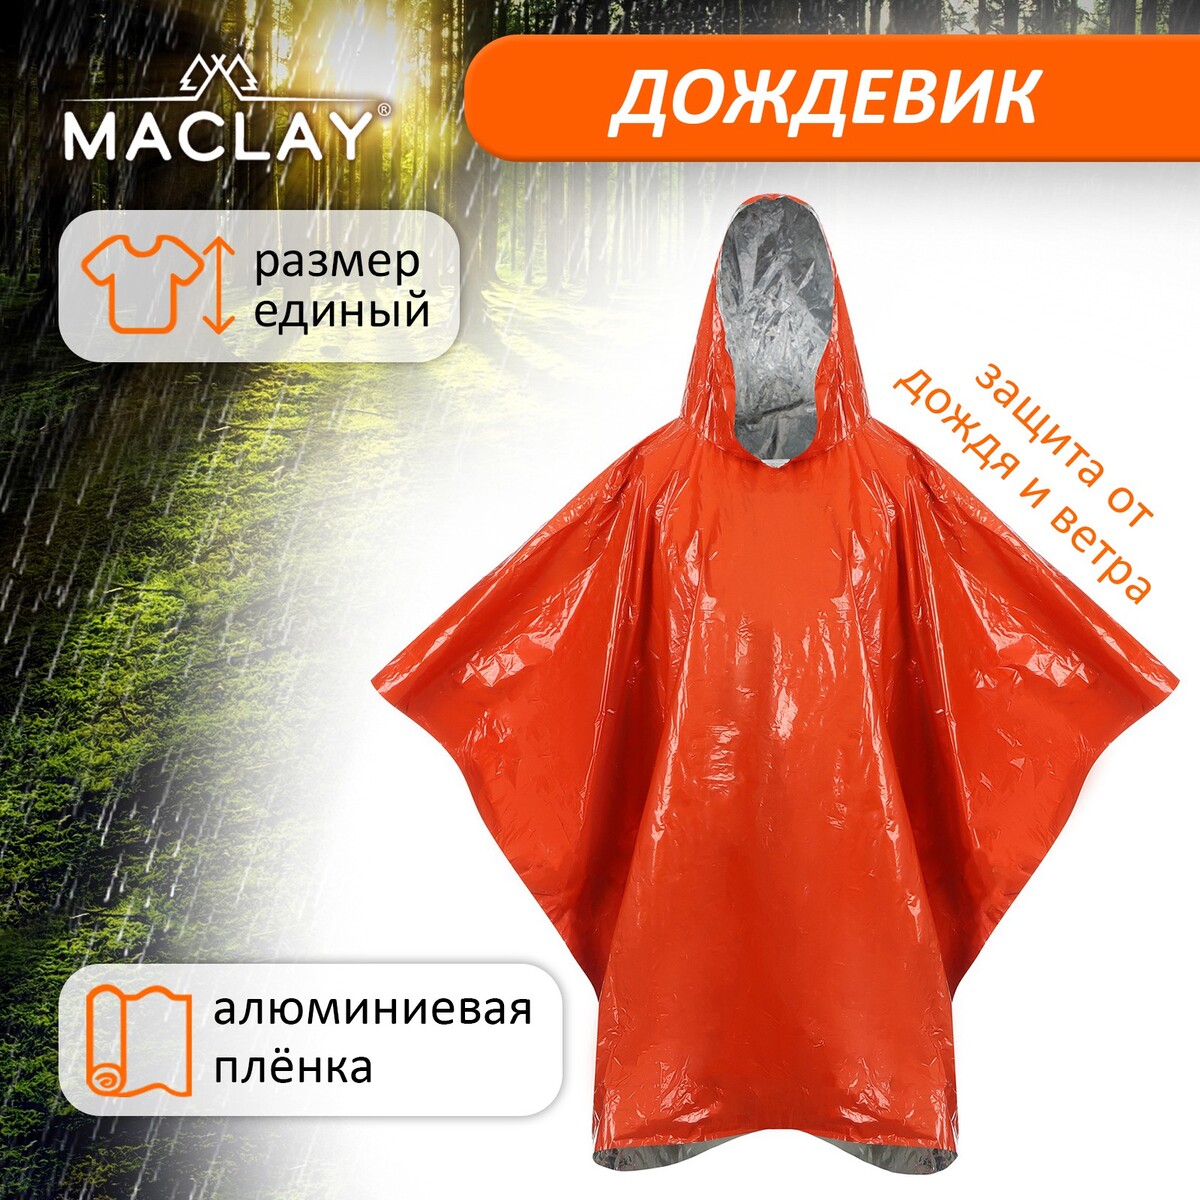 Дождевик maclay, фольгированный, 100х125 см, цвет оранжевый косметичка несессер на молнии с крючком наружный карман оранжевый